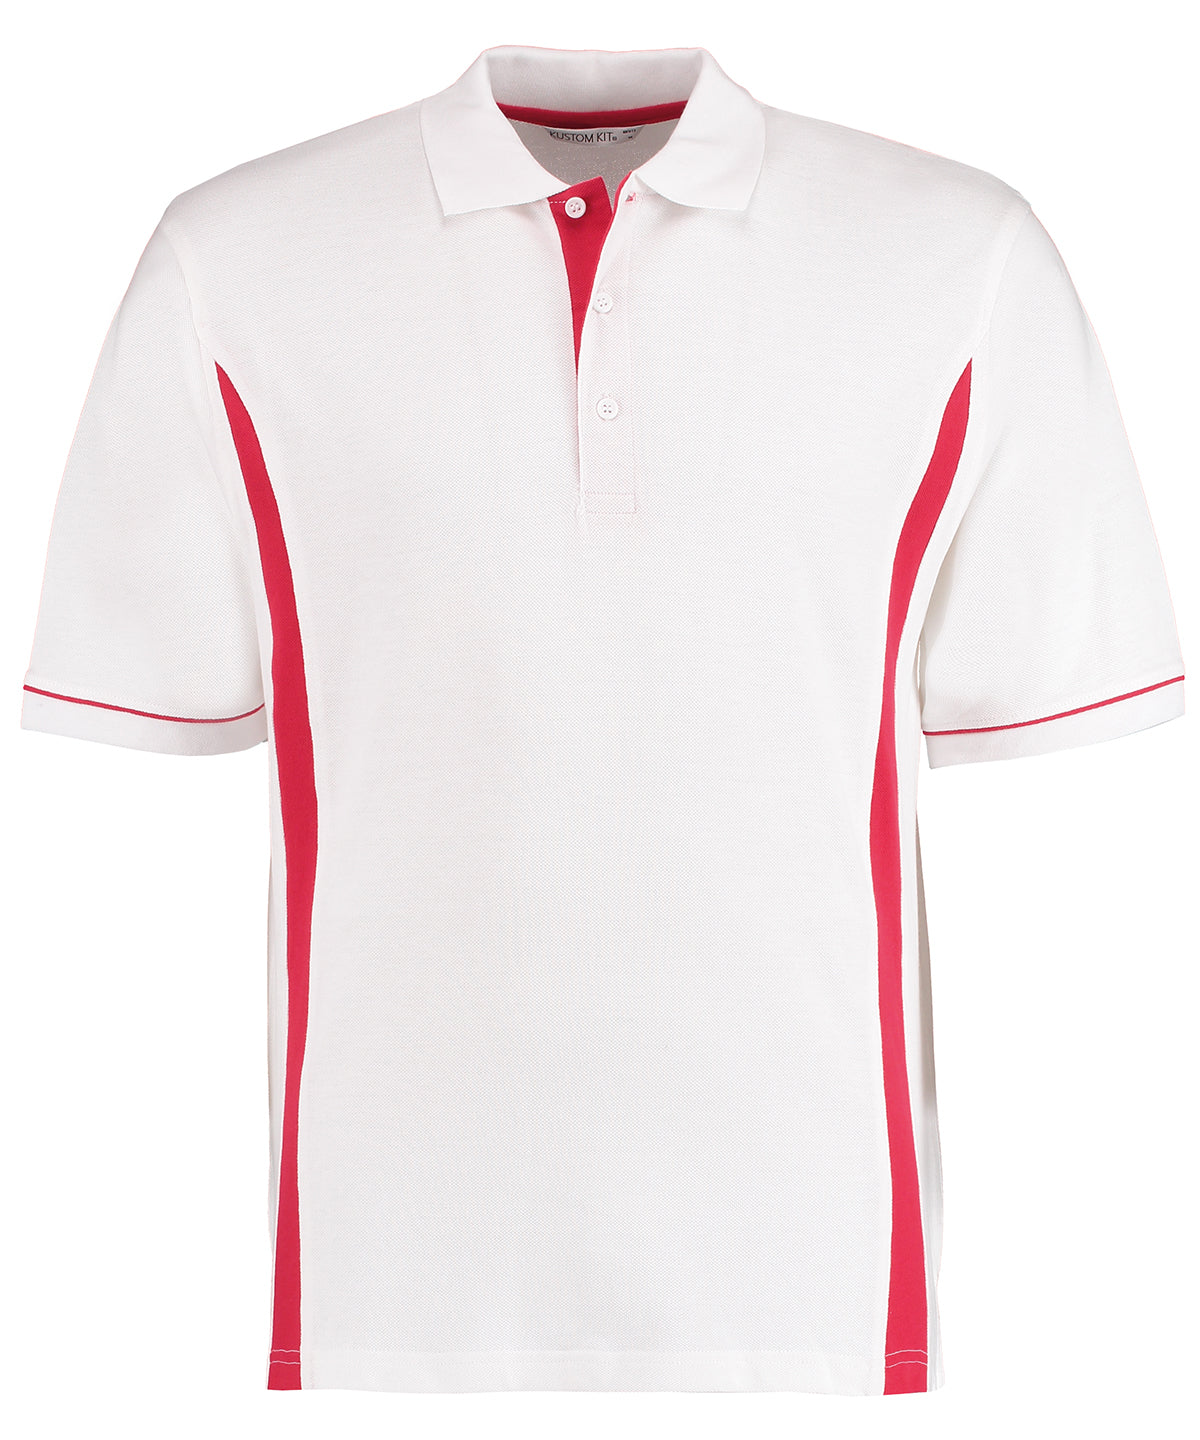 Personalised Polo Shirts - Black Kustom Kit Scottsdale polo (classic fit)